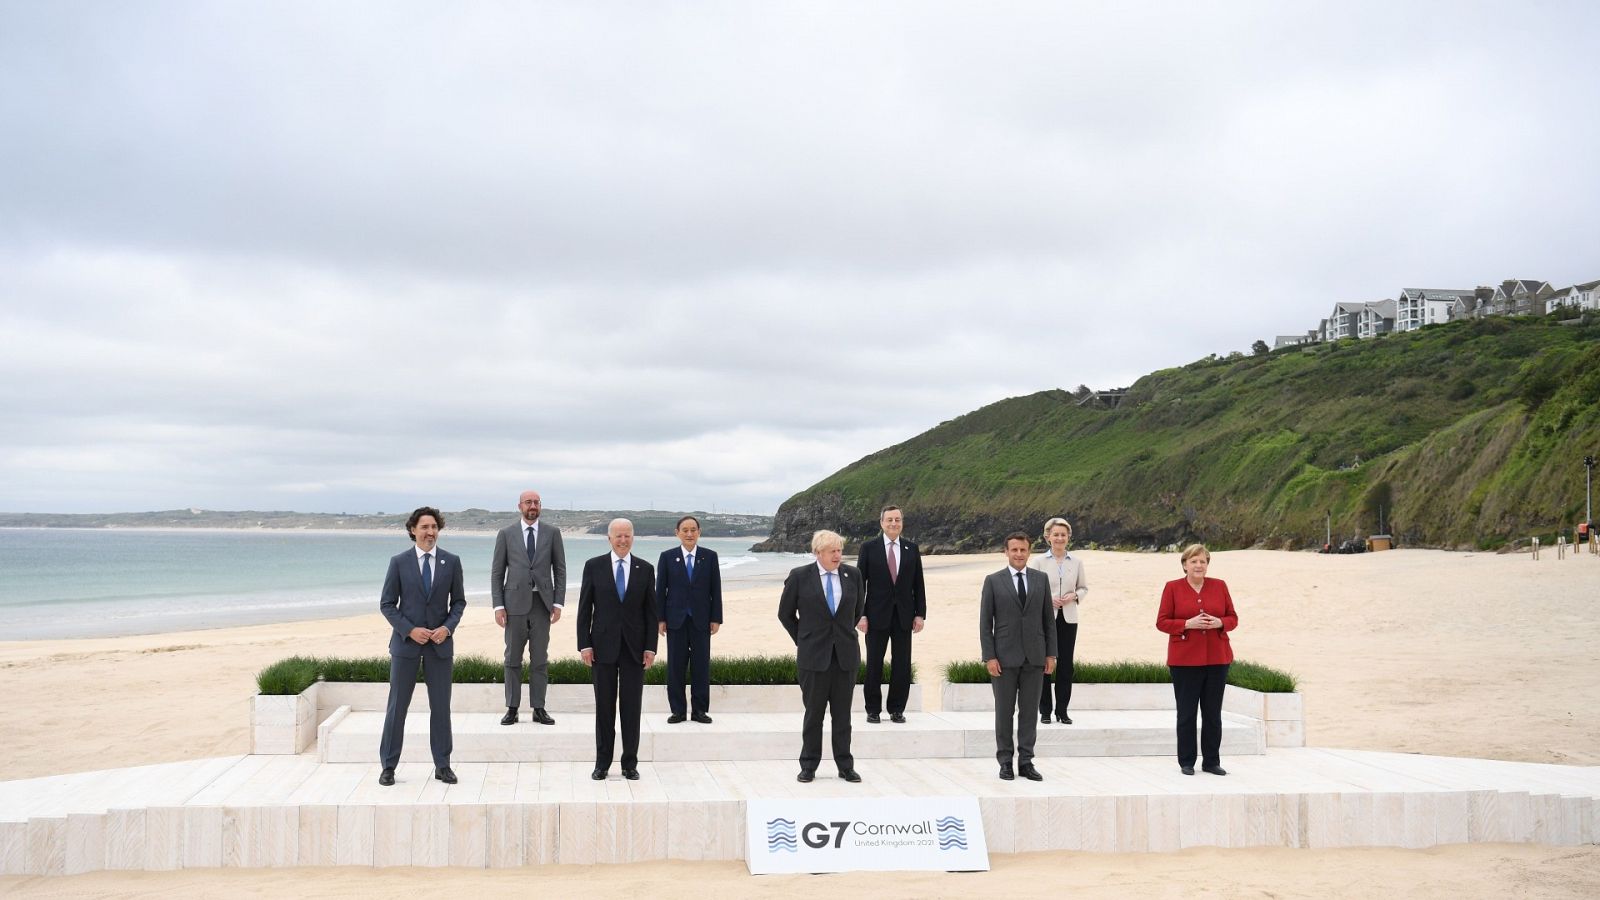 El primer ministro británico, Boris Johnson, posa con los líderes del G7 para la foto de familia durante la cumbre del G7 en Carbis Bay, Reino Unido